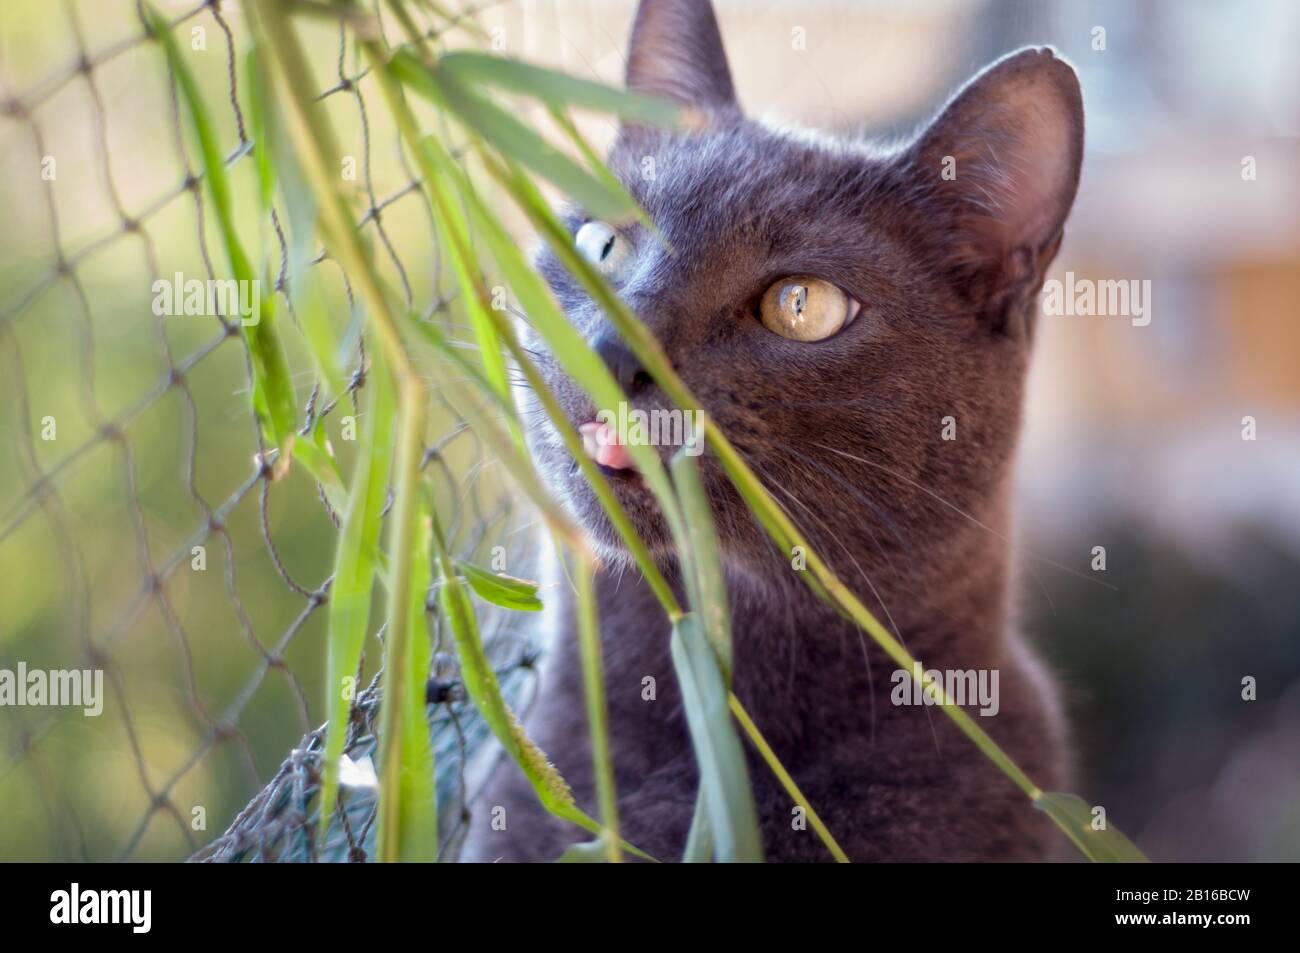 Schöne graue Katze, die irgendwo hinschaut und etwas Gras leckt. Schützendes Netz auf dem Hintergrund.lustiges Gesicht. Neugier, Konzentration Stockfoto